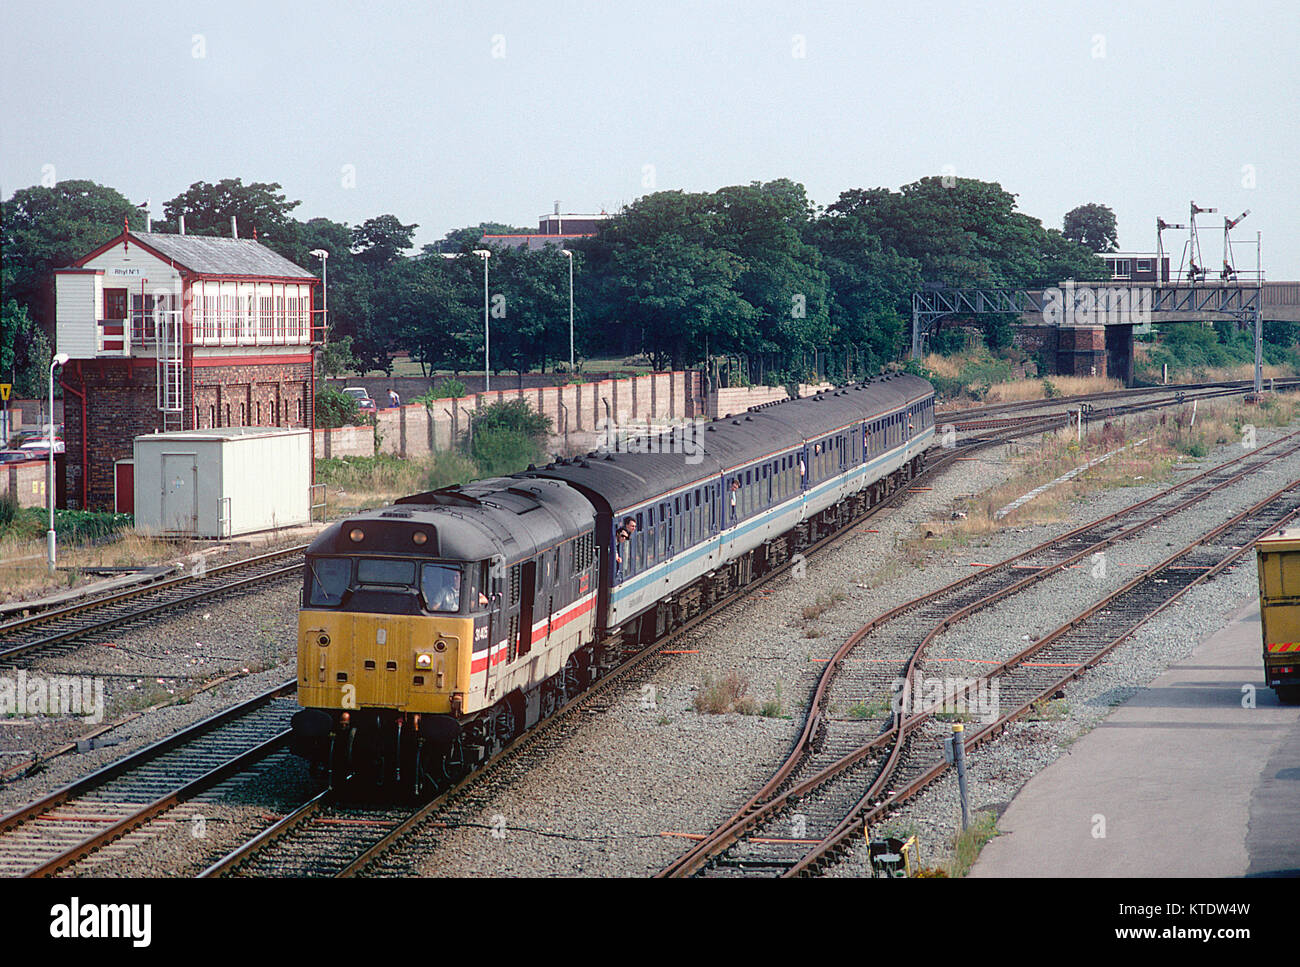 Un certain nombre de locomotives diesel de la classe 31 rouleaux passé 31405 Muro n° 1 boîte avec un service de chemin de fer régional à Rhyl. 19 août 1995. Banque D'Images